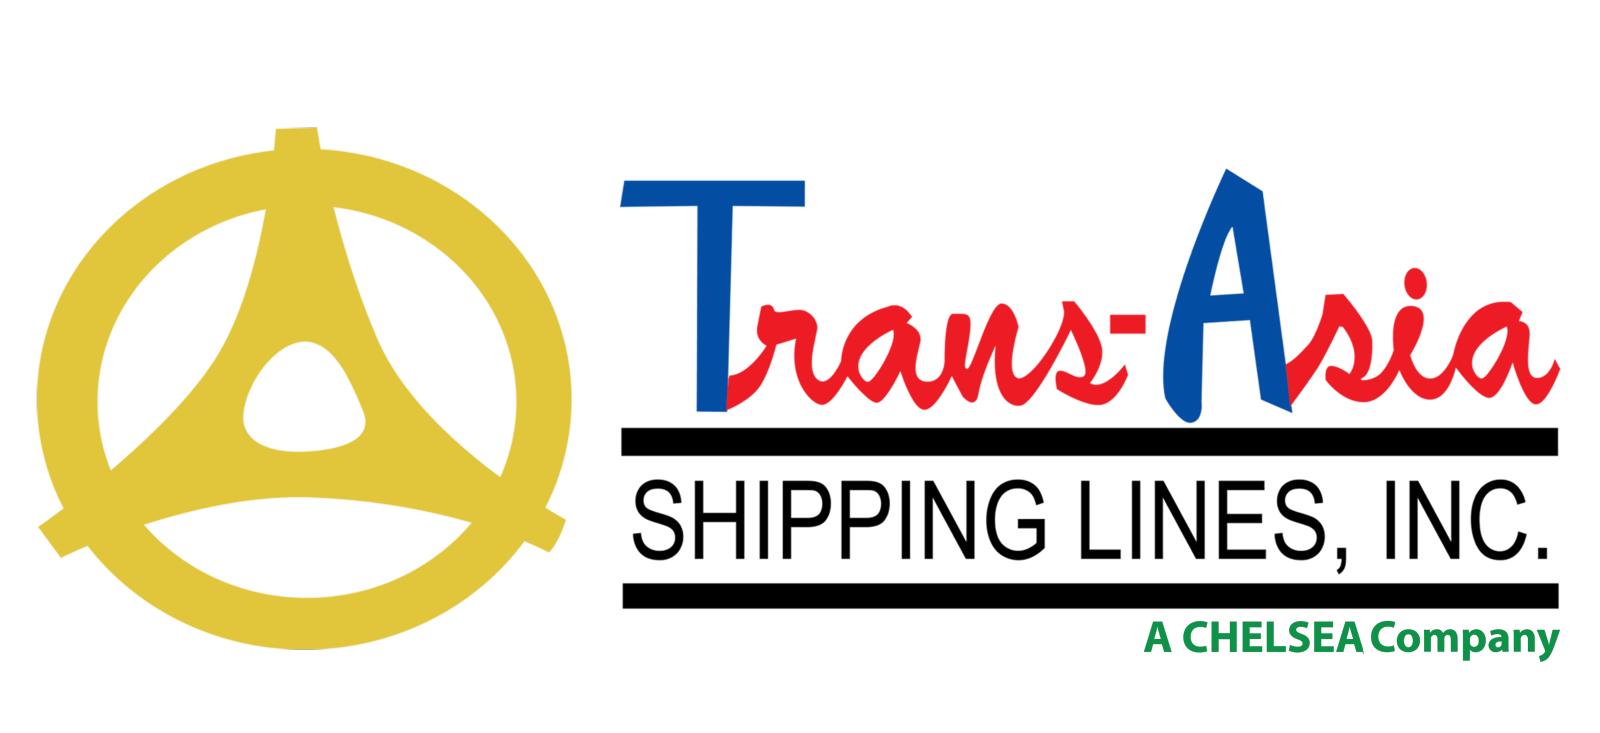 transasia-logo2.png